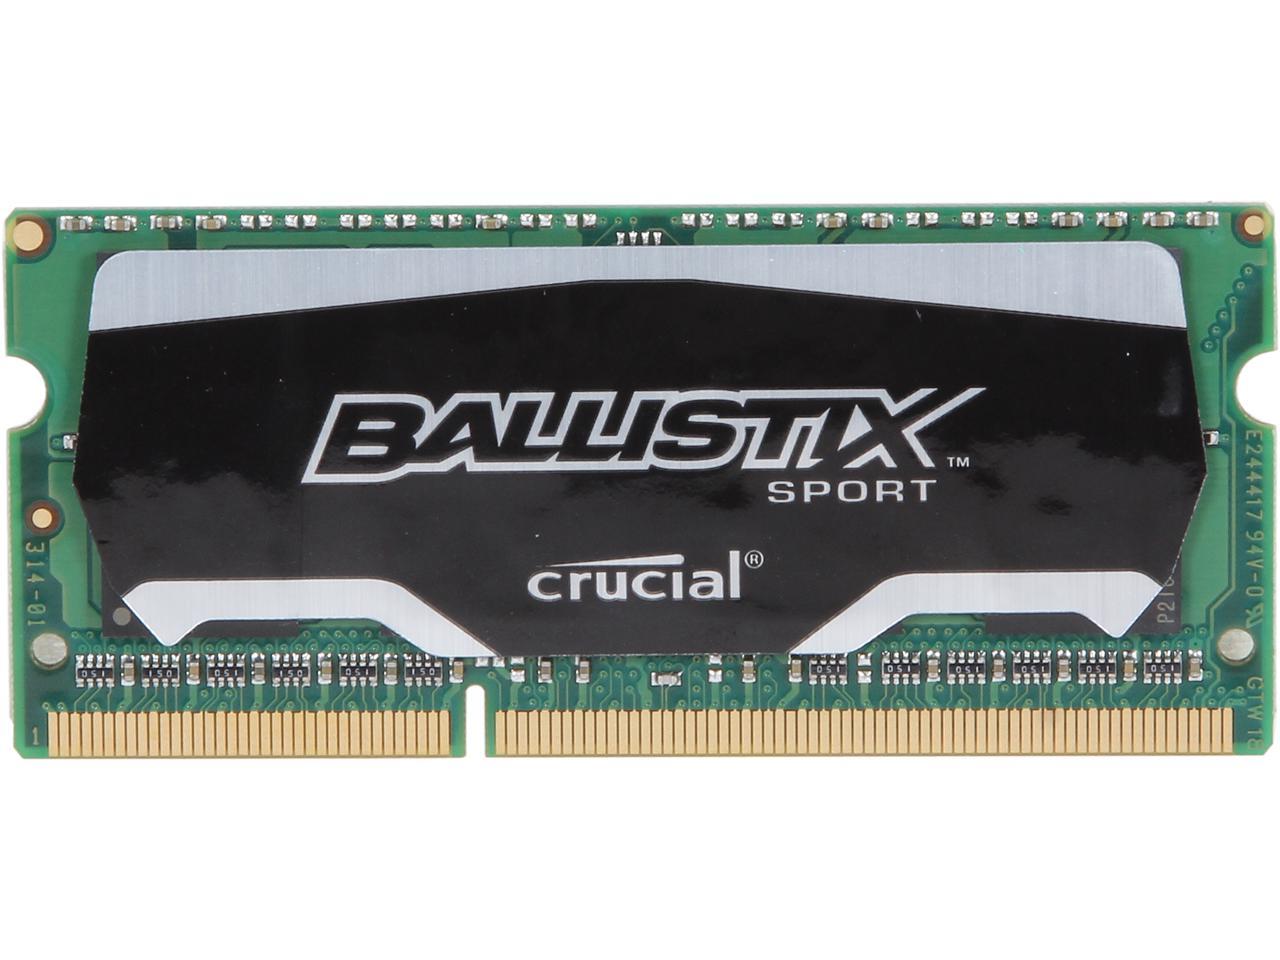 Crucial Ballistix Sport 8GB 204-Pin DDR3 SO-DIMM DDR3 1866 (PC3 